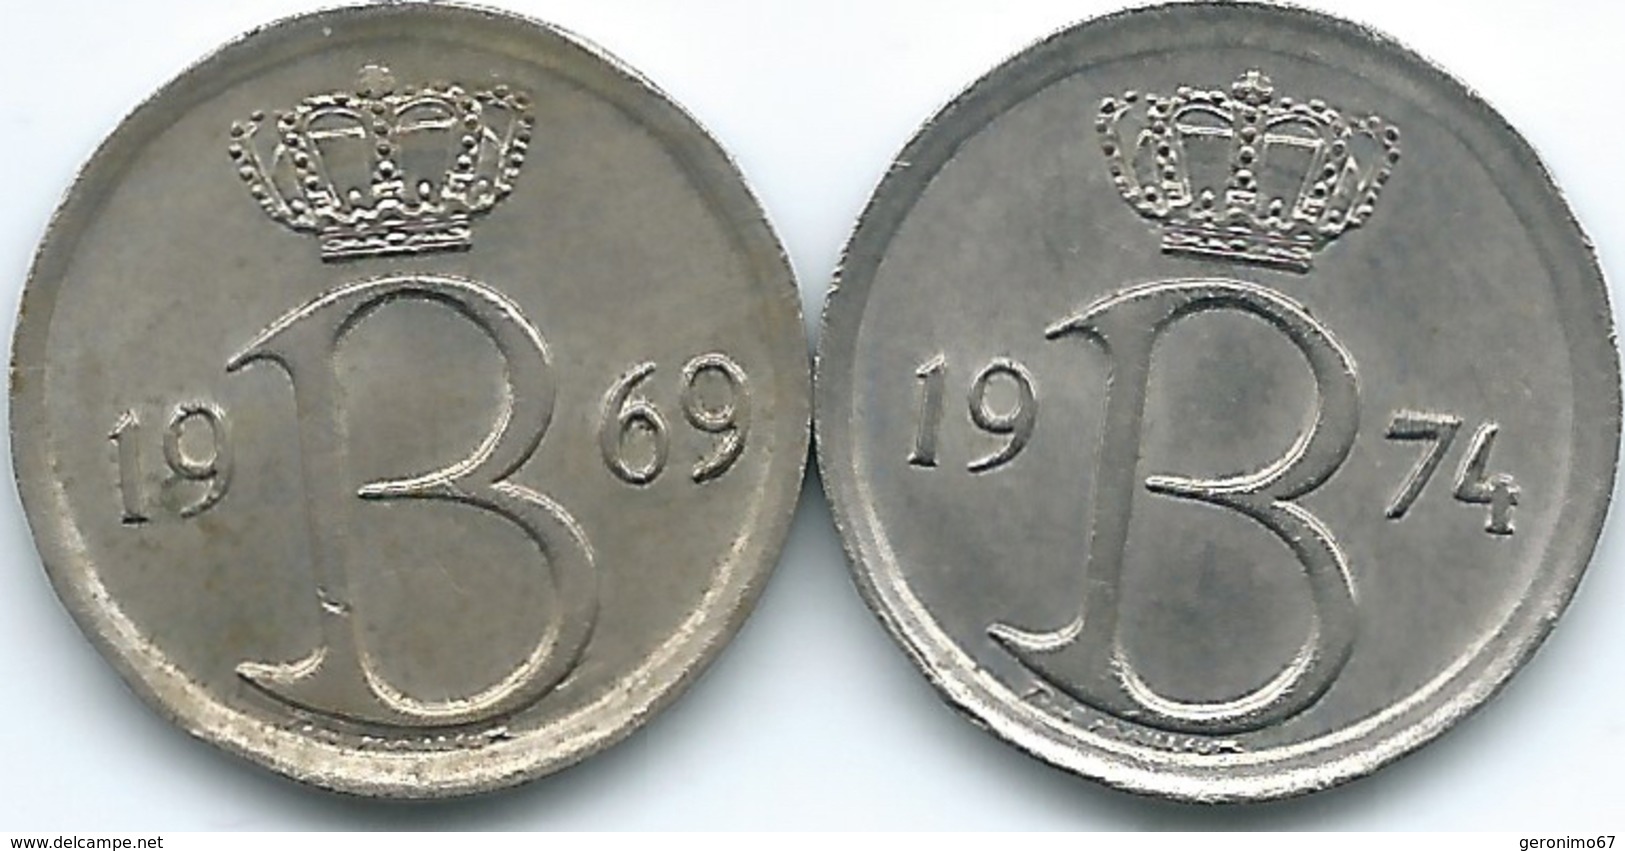 Belgium - Baudouin - 25 Centimes - 1974 - French (KM153.1) & 1969 - Dutch (KM154.1) - 25 Cents